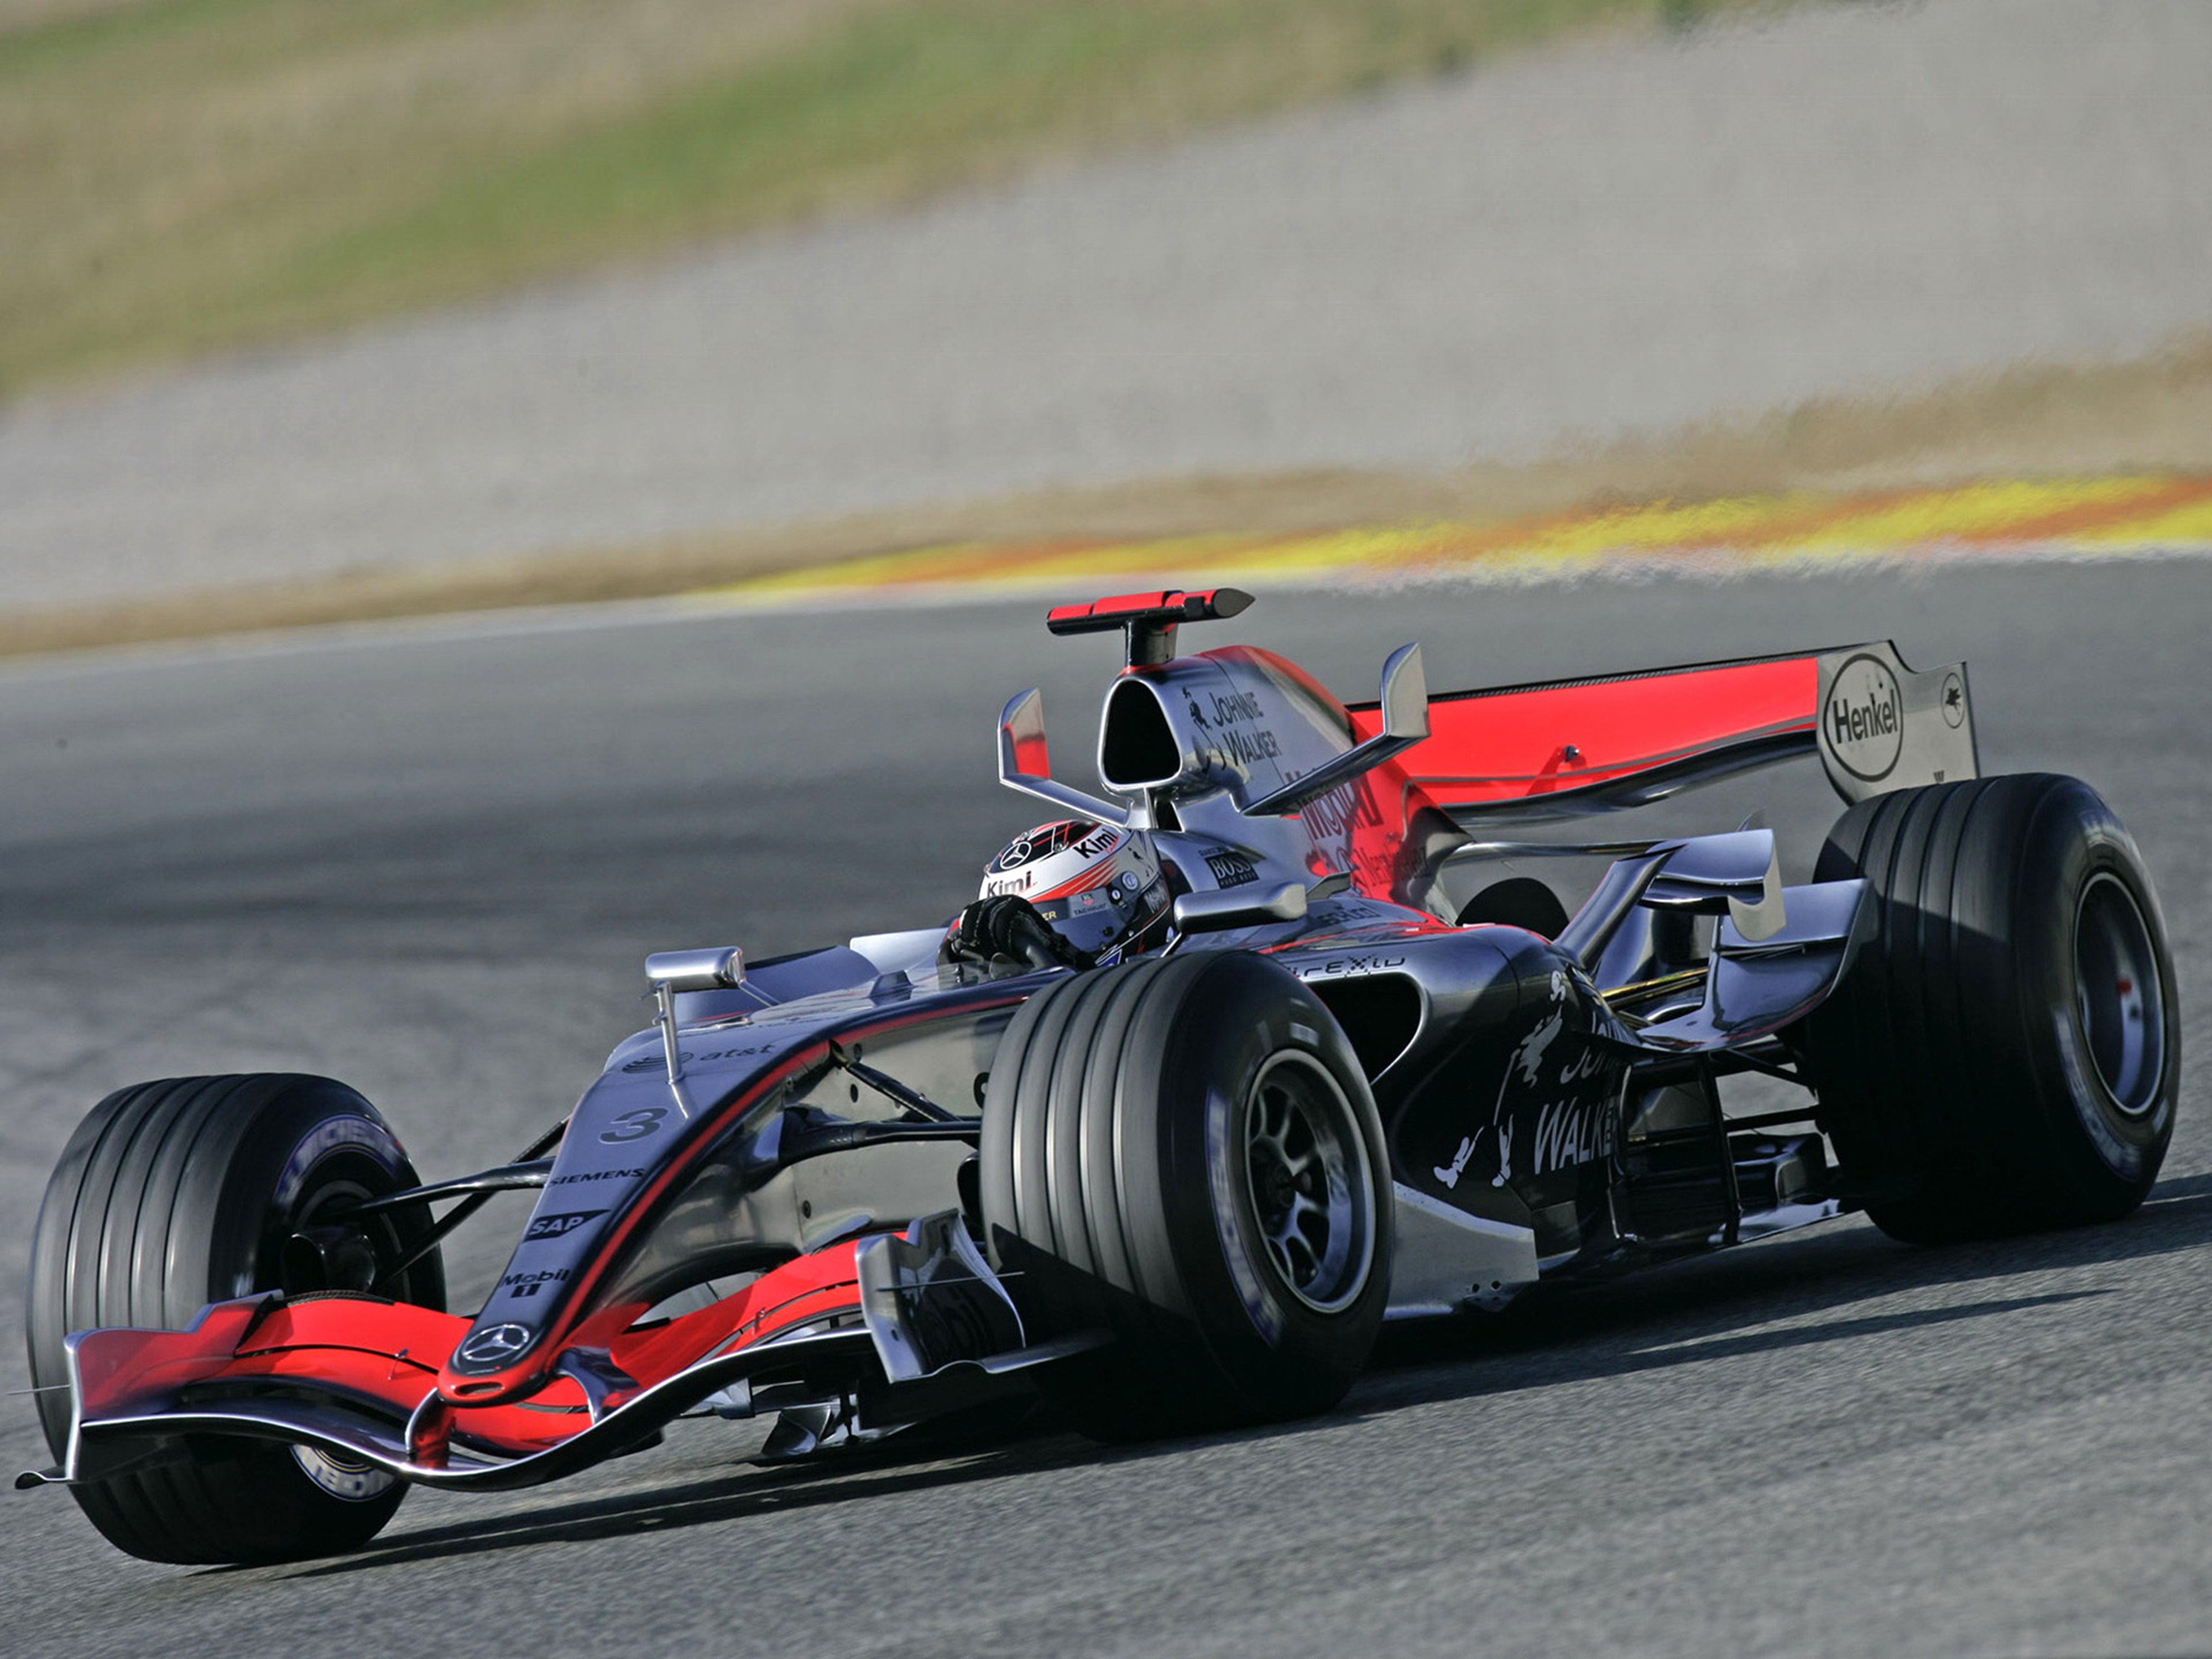 2006, Formula1, Mclaren, Mp4 21, Race, Car, Racing, 4000x3000 Wallpaper